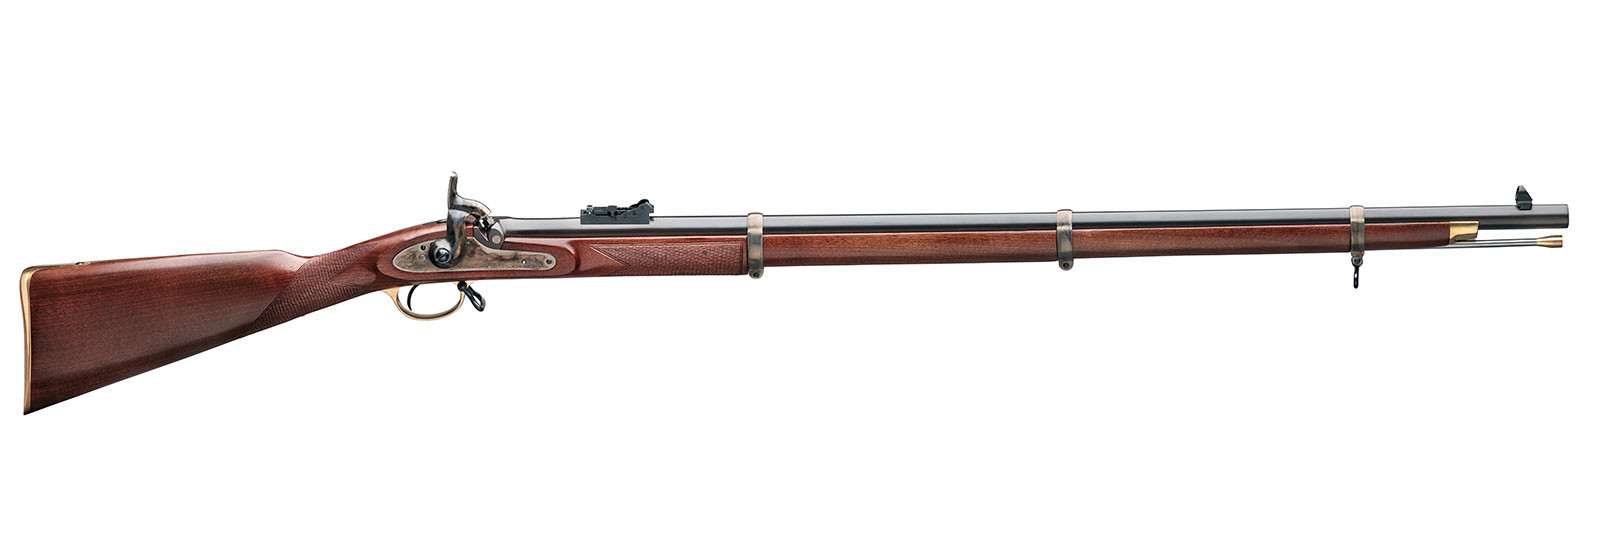 Fucile Whitworth Rifle